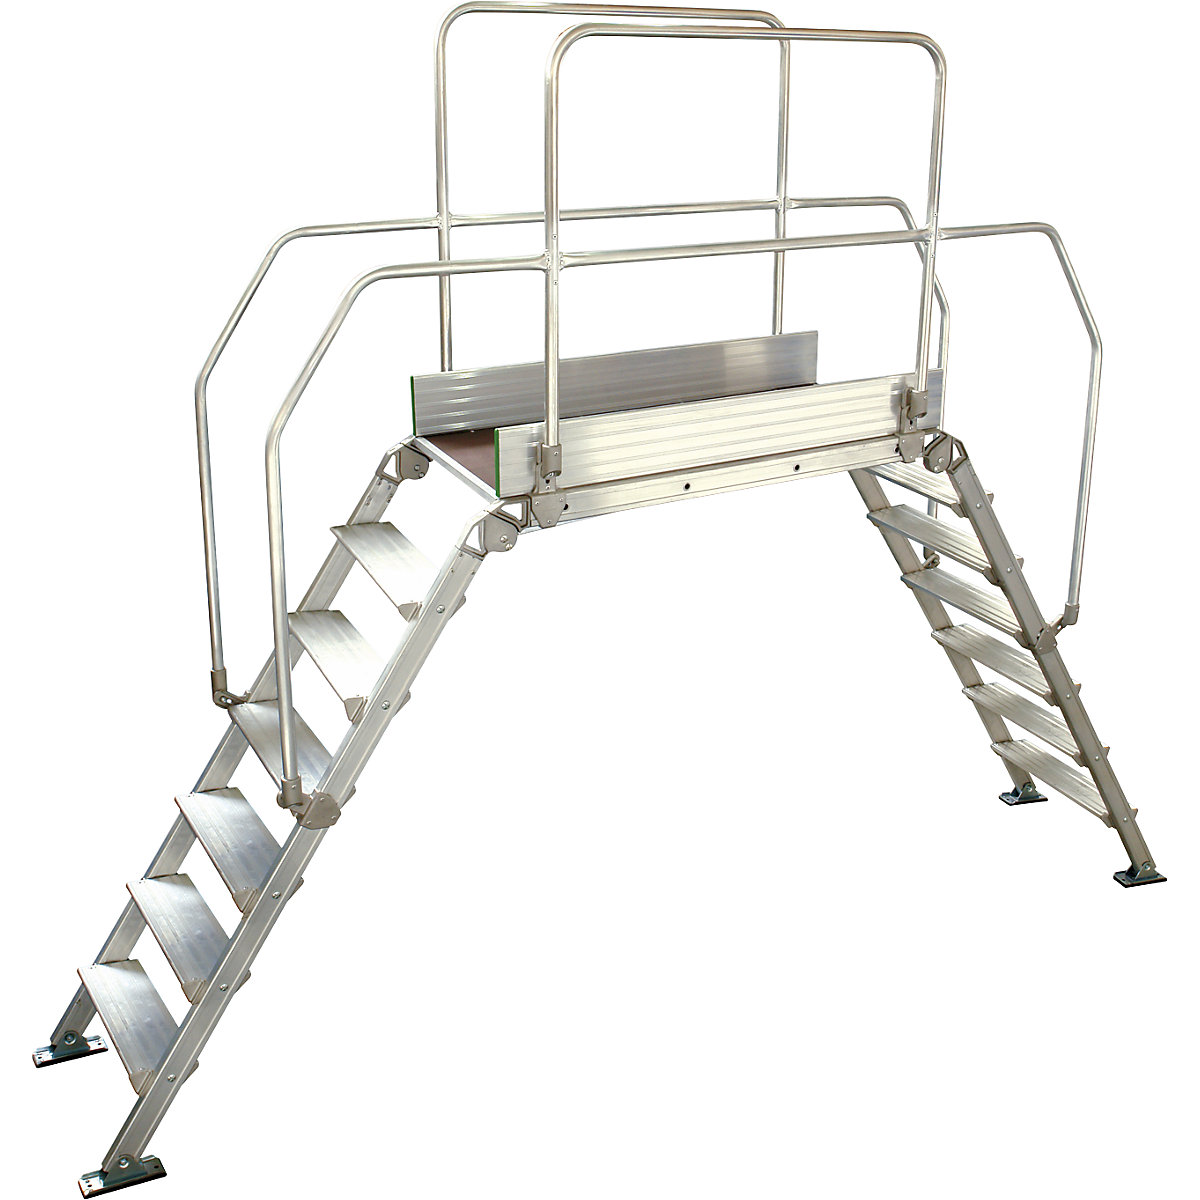 Aluminijasta premostitvena lestev, skupna obremenitev 200 kg, 7 stopnic, podest 1200 x 530 mm